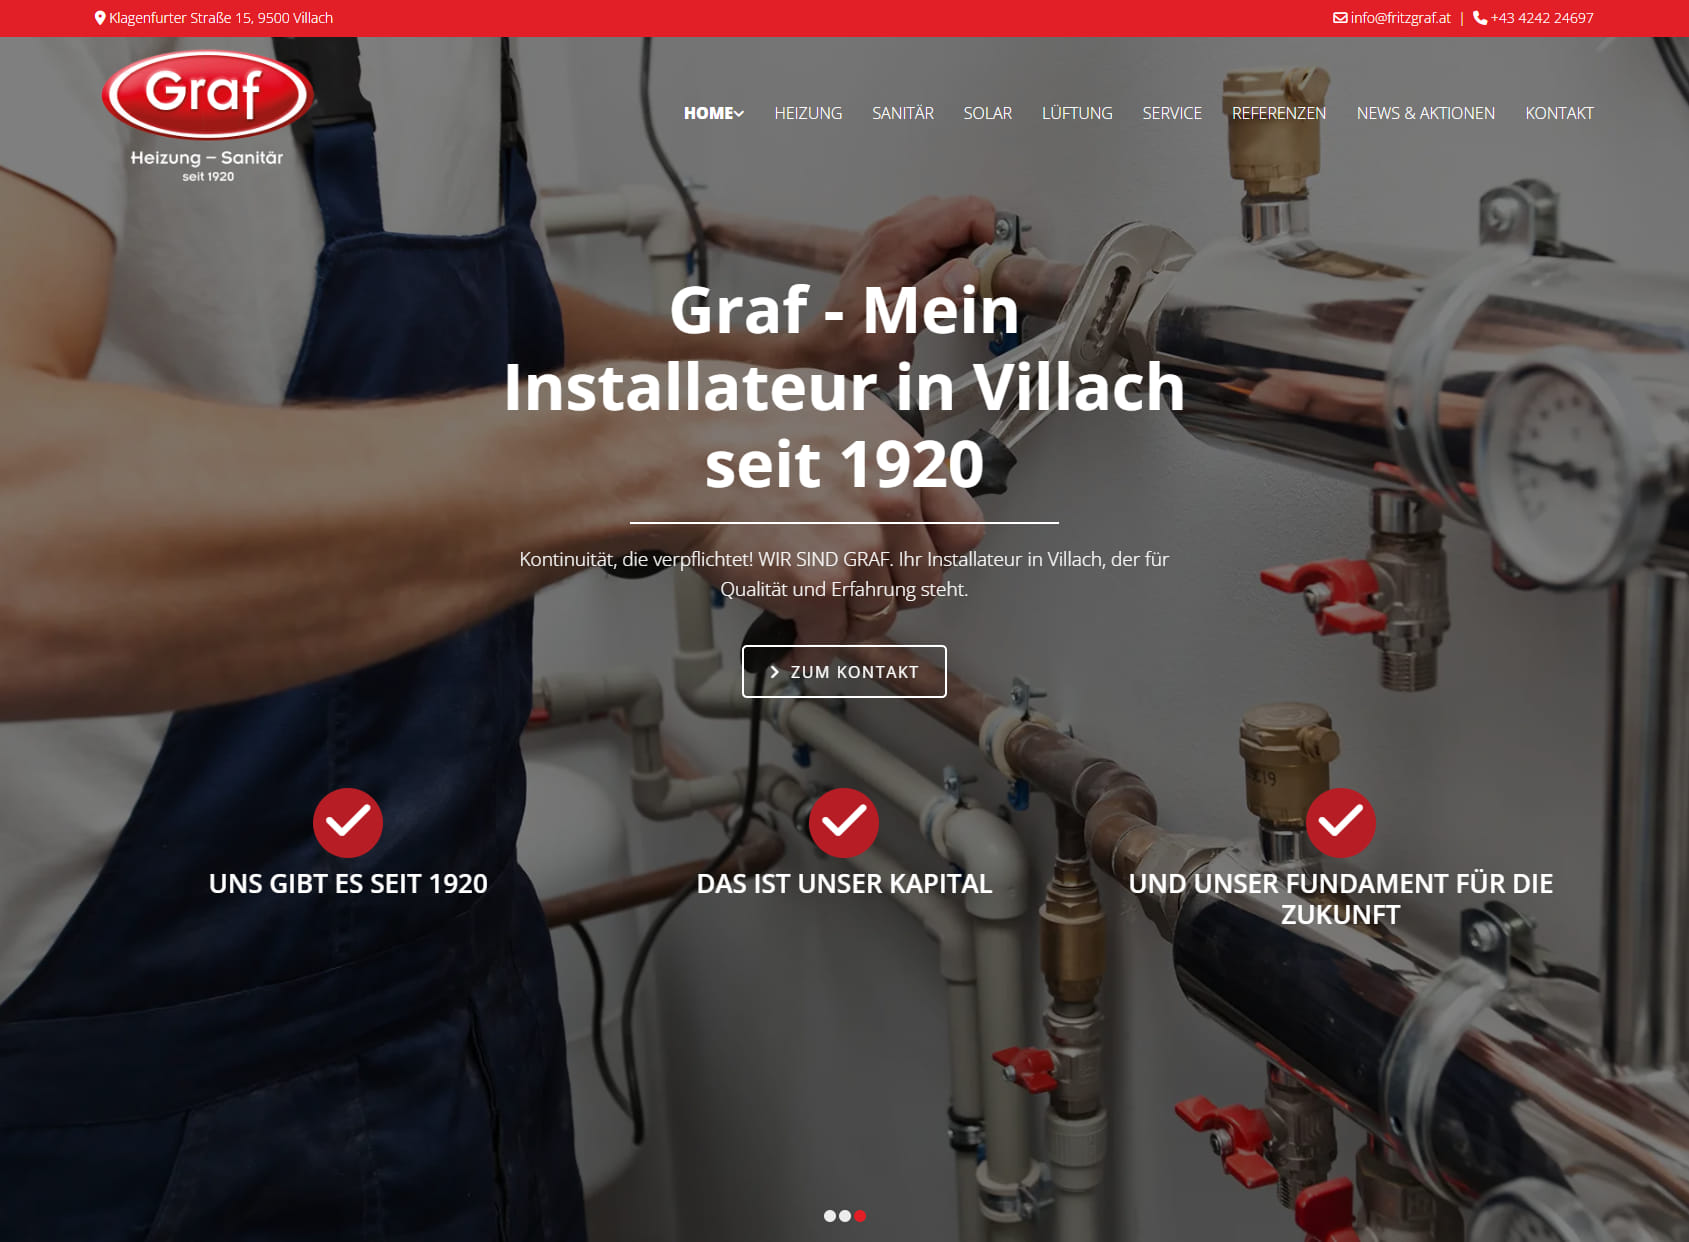 Fritz Graf & Co GmbH